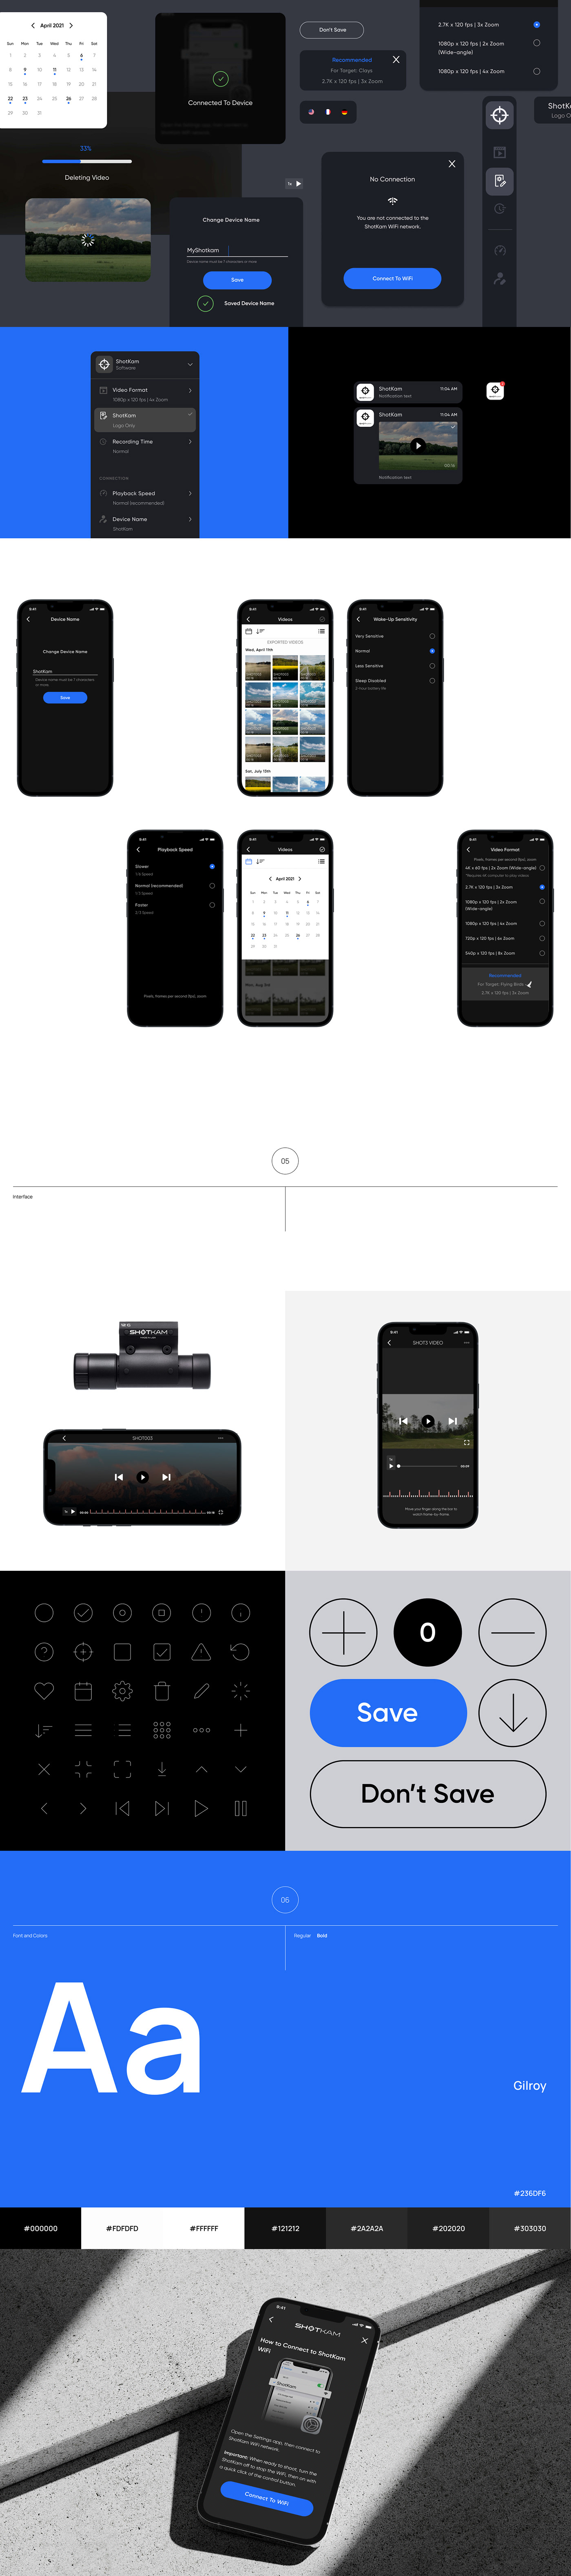 app design Figma Mobile app ui design UI/UX user experience user interface ux